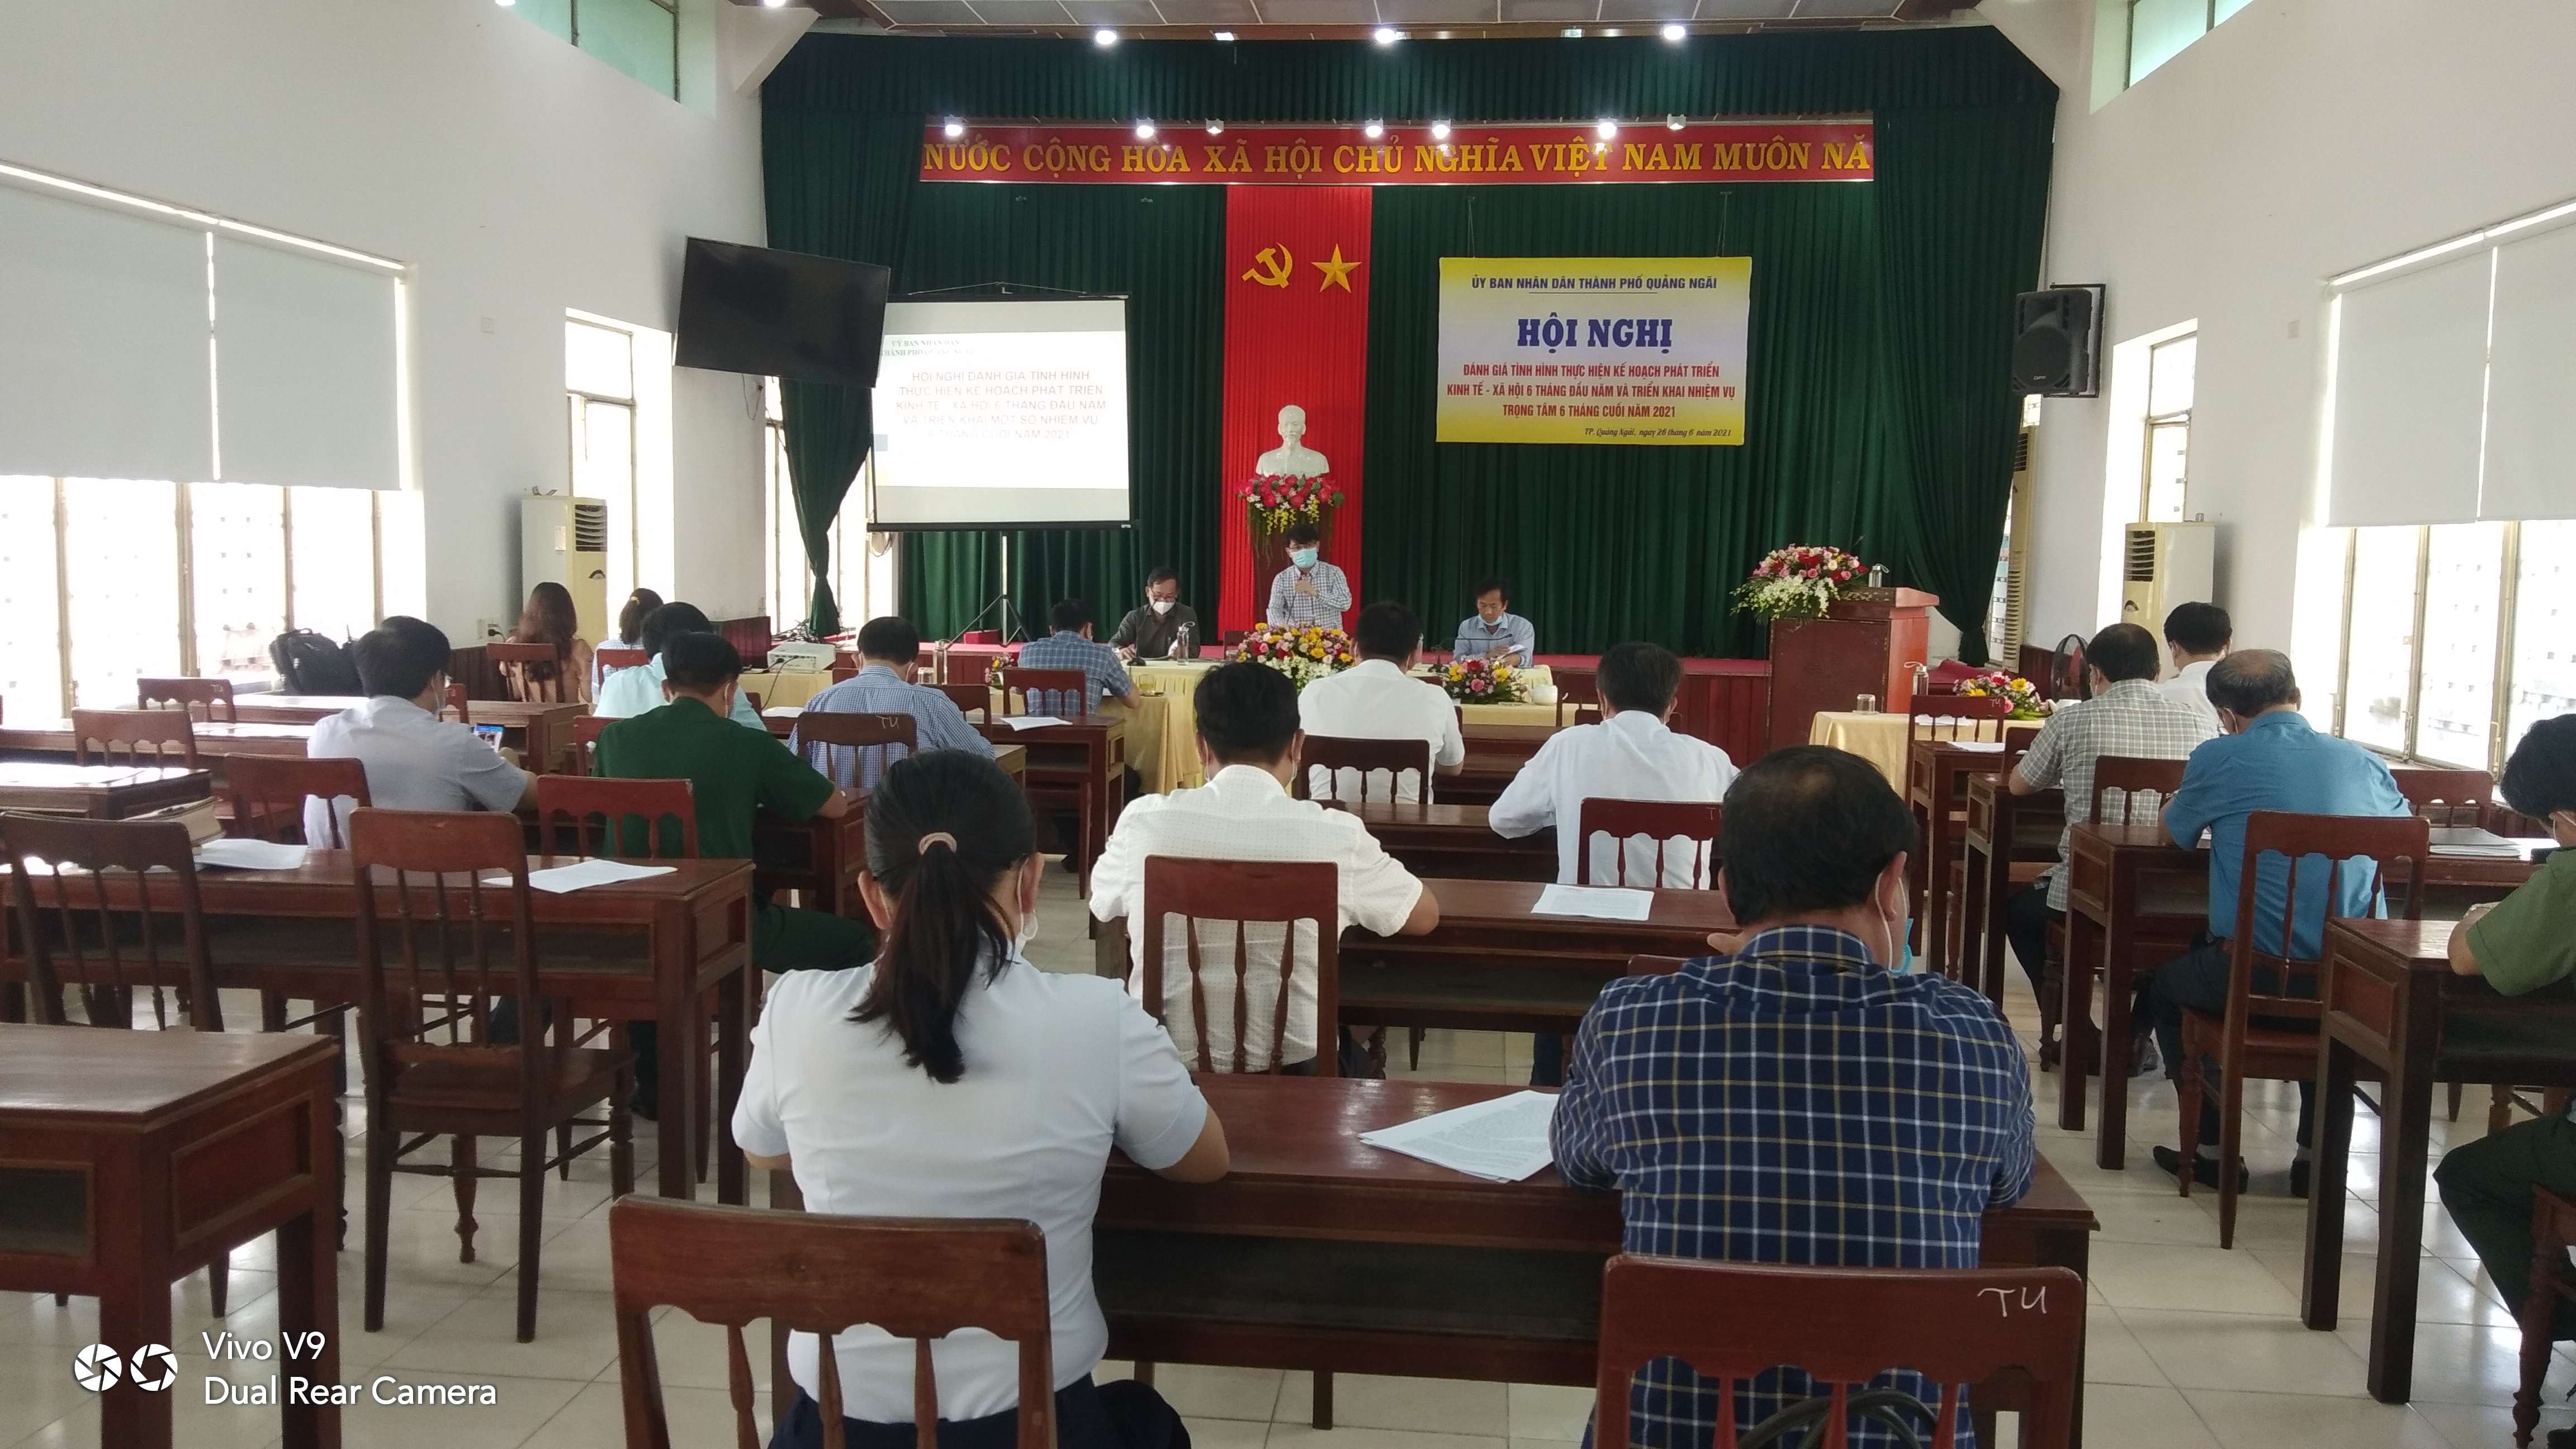 UBND thành phố Quảng Ngãi chỉ đạo: Siết chặt kỷ luật, kỷ cương hành chính chính để thực hiện có hiệu quả các nhiệm vụ trong 6 tháng cuối năm 2021